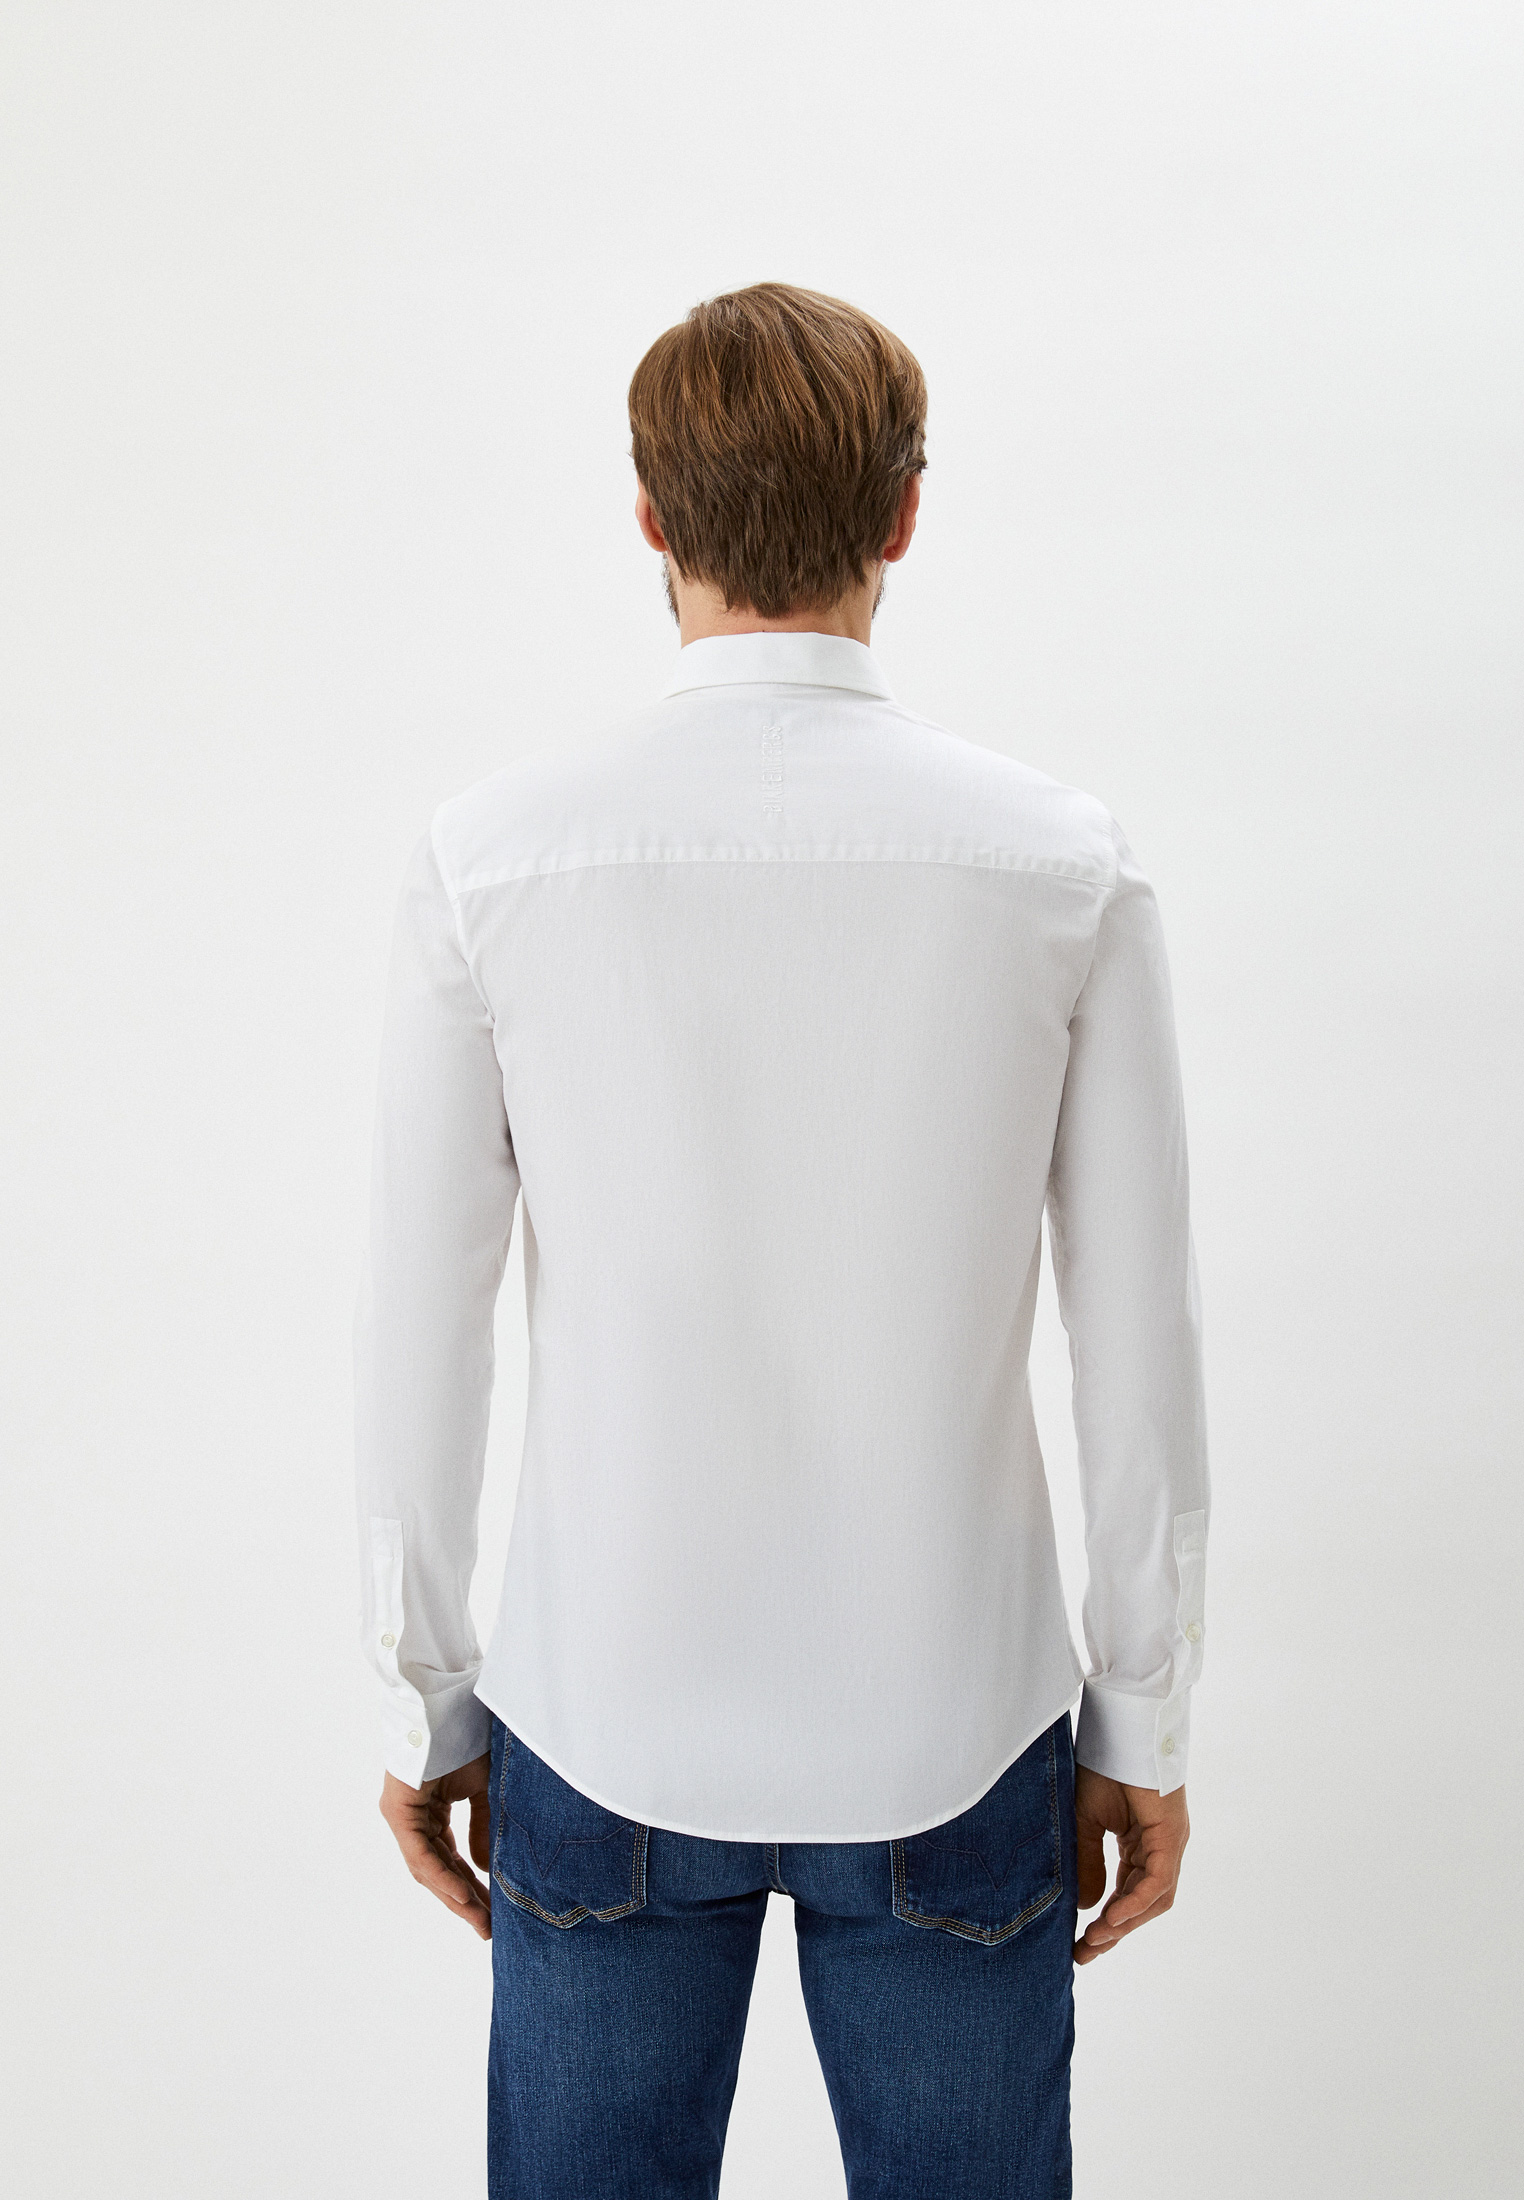 Рубашка с длинным рукавом Bikkembergs (Биккембергс) C C 009 07 S 2931: изображение 6